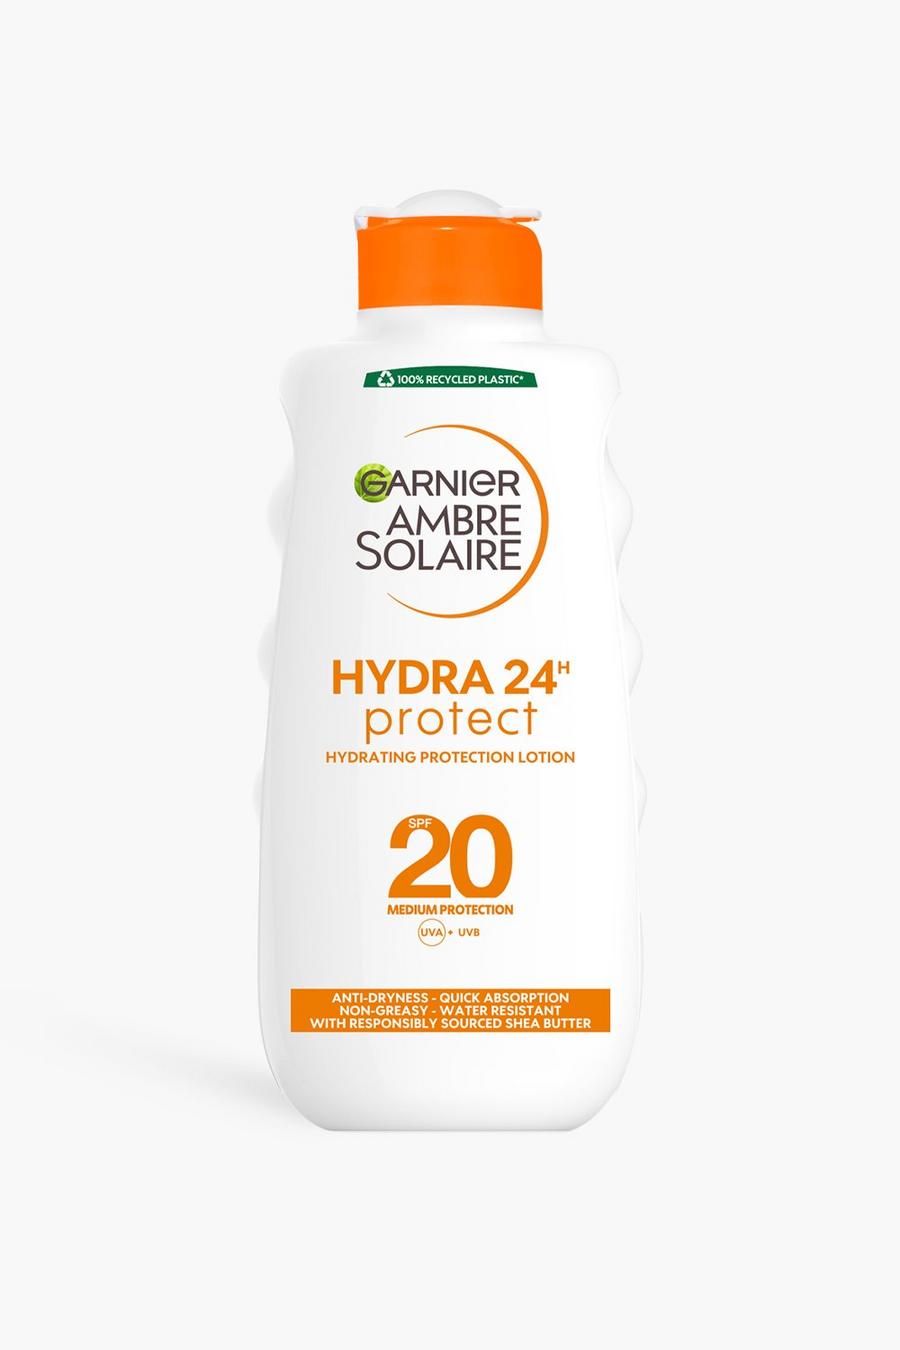 Garnier - Ambre solaire ultra hydratante SPF 20+ - 200ml, White blanc